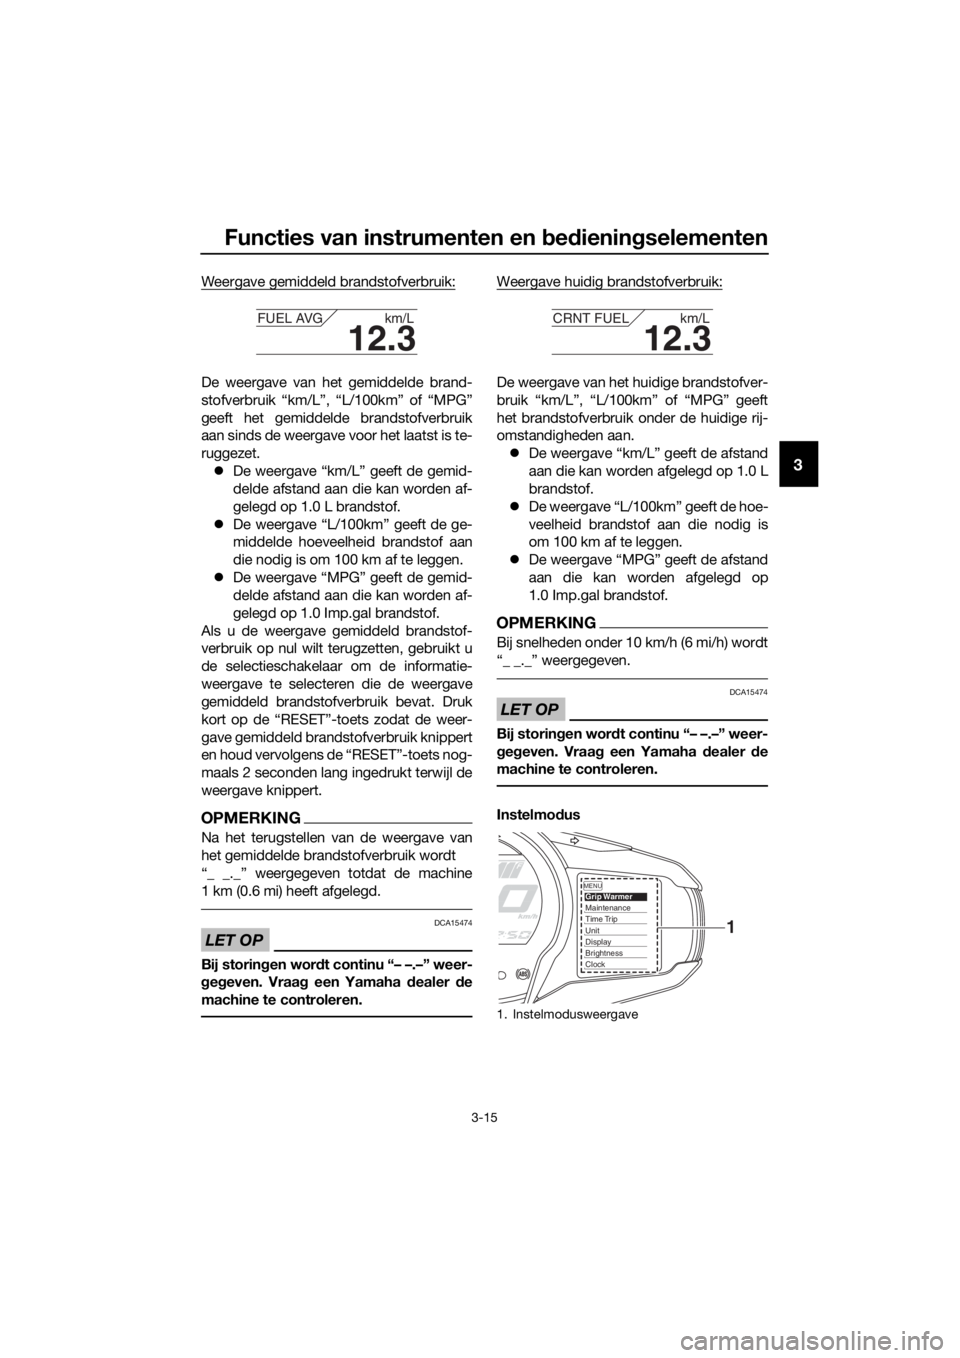 YAMAHA FJR1300A 2018  Instructieboekje (in Dutch) Functies van instrumenten en bed ienin gselementen
3-15
3
Weergave gemiddeld brandstofverbruik:
De weergave van het gemiddelde brand-
stofverbruik “km/L”, “L/100km” of “MPG”
geeft het gemi